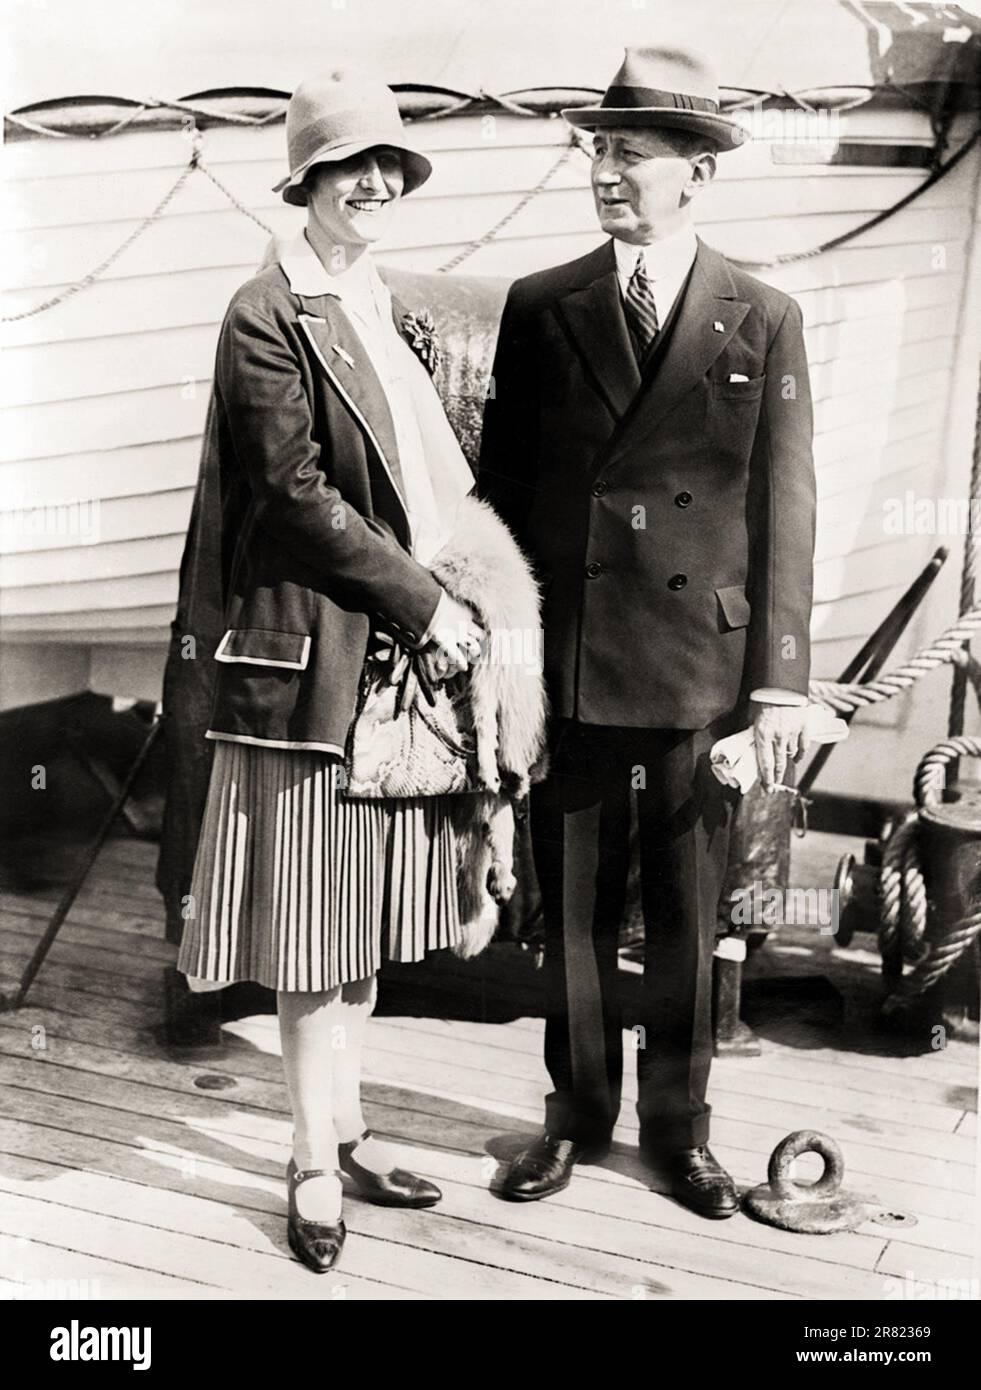 1927 c. , USA : il celebre inventore italiano Marquis GUGLIELMO MARCONI ( 1874 - 1937 ) e la sua 2nd moglie , sposata nel 1927 , la contessa Maria Cristina BEZZI-SCALO ( 1900 - 1994 ), su una barca transatlantica . La coppia ebbe una figlia: Maria ELETTRA MARCONI (nata il 30 luglio 1930 , in seguito sposata con il principe Carlo GIOVANELLI ). Fotografo sconosciuto . - Nobiltà italiana - Bezzi Scalo - nobiltà - ritratto - ritratto - Nobili italiani - FOTO STORICHE - STORIA - Marchesa - Marchese - Principessa - Giovannelli - NAVATA - MOTONAVE - TRANSATLONTICO - CRUISER --- Archivio GBB Foto Stock